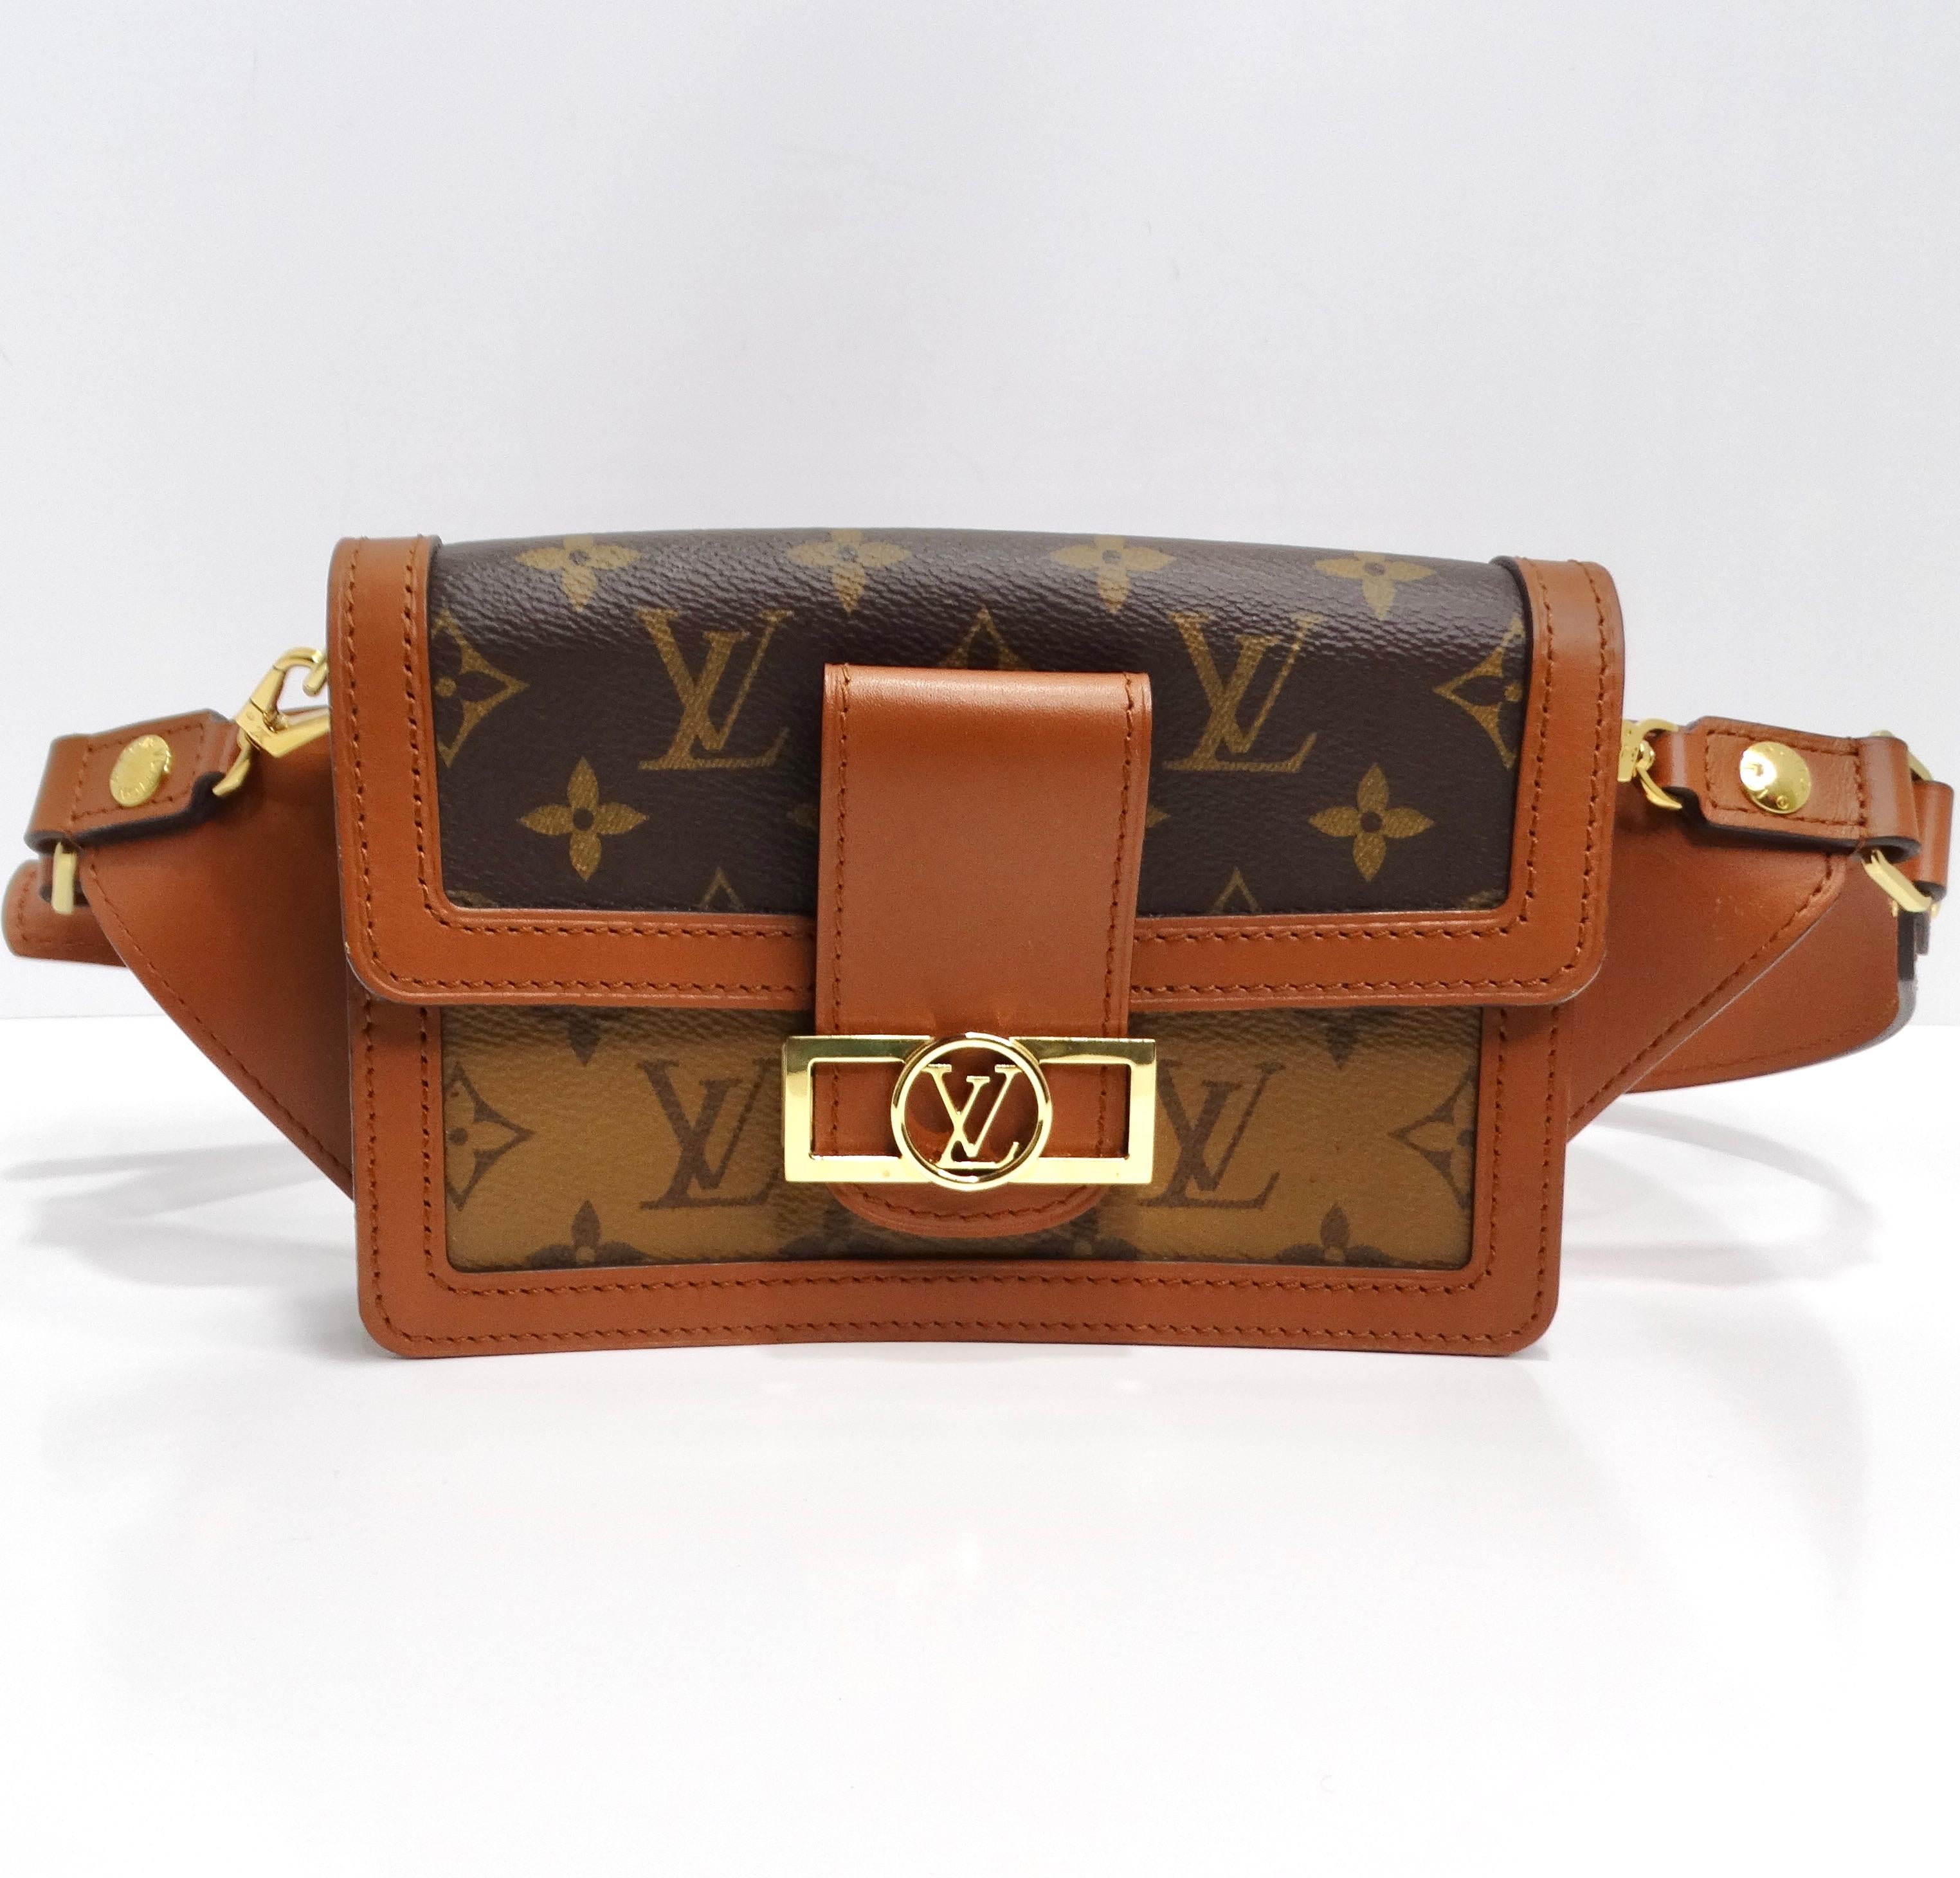 Die Louis Vuitton Reverse Monogram Dauphine Bumbag ist ein stilvolles Accessoire, das Luxus und Funktionalität nahtlos verbindet. Diese Tasche aus Louis Vuitton Monogram auf Toilettentuch strahlt Raffinesse und Eleganz aus.

Die Tasche verfügt über